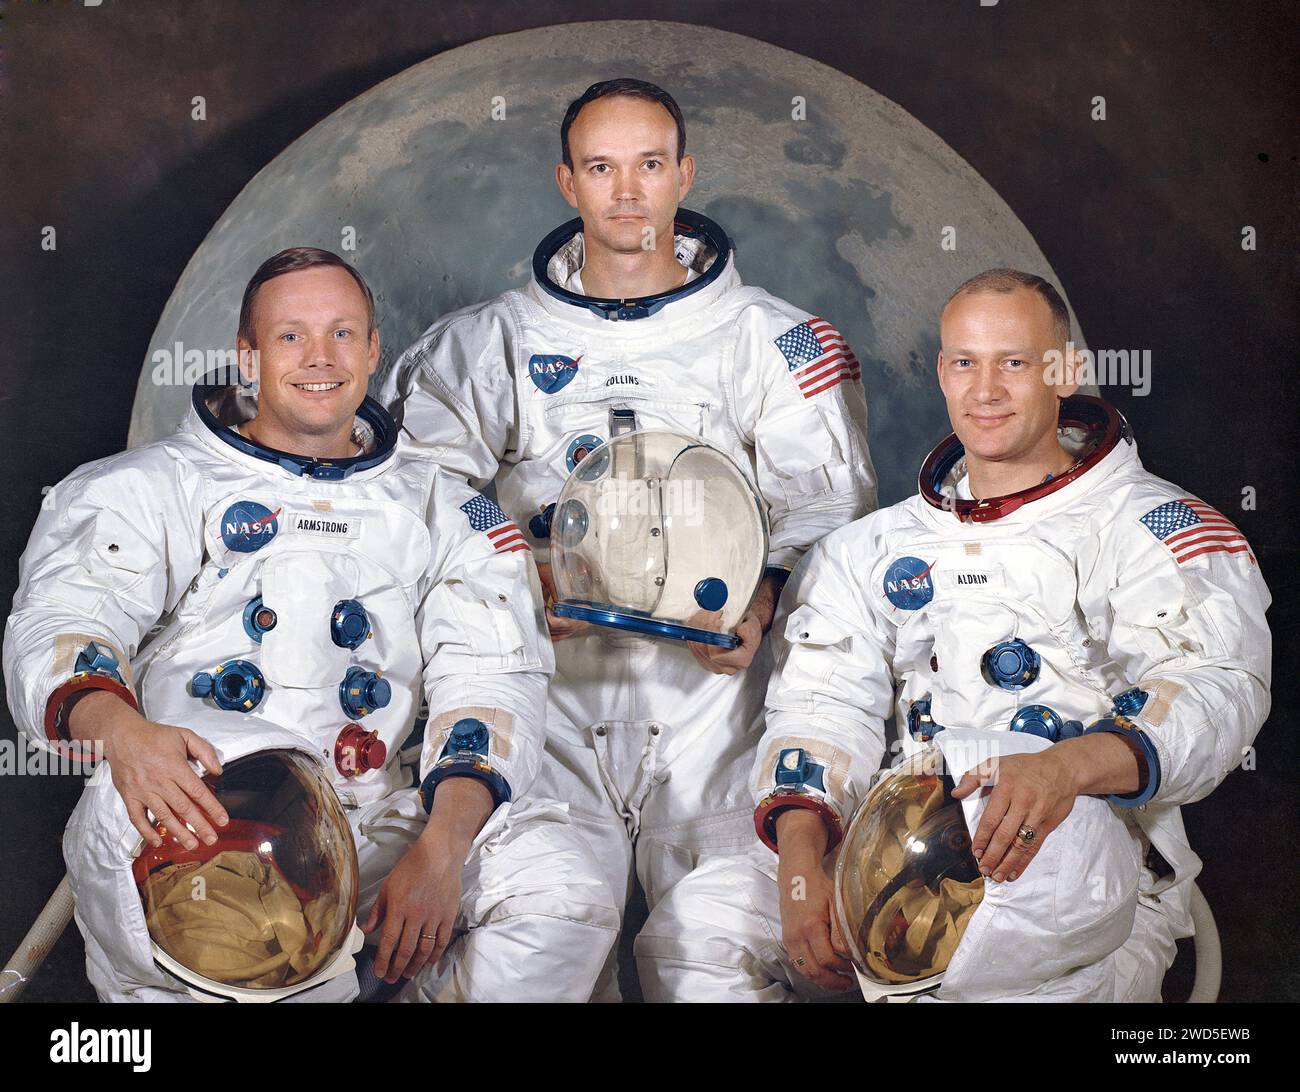 Ritratto ufficiale dell'equipaggio dell'Apollo 11 astronauti, (l-r) Neil A. Armstrong, Comandante; Michael Collins, Module Pilot; Edwin E. 'Buzz' Aldrin, Lunar Module Pilot, NASA, 30 marzo 1969 Foto Stock